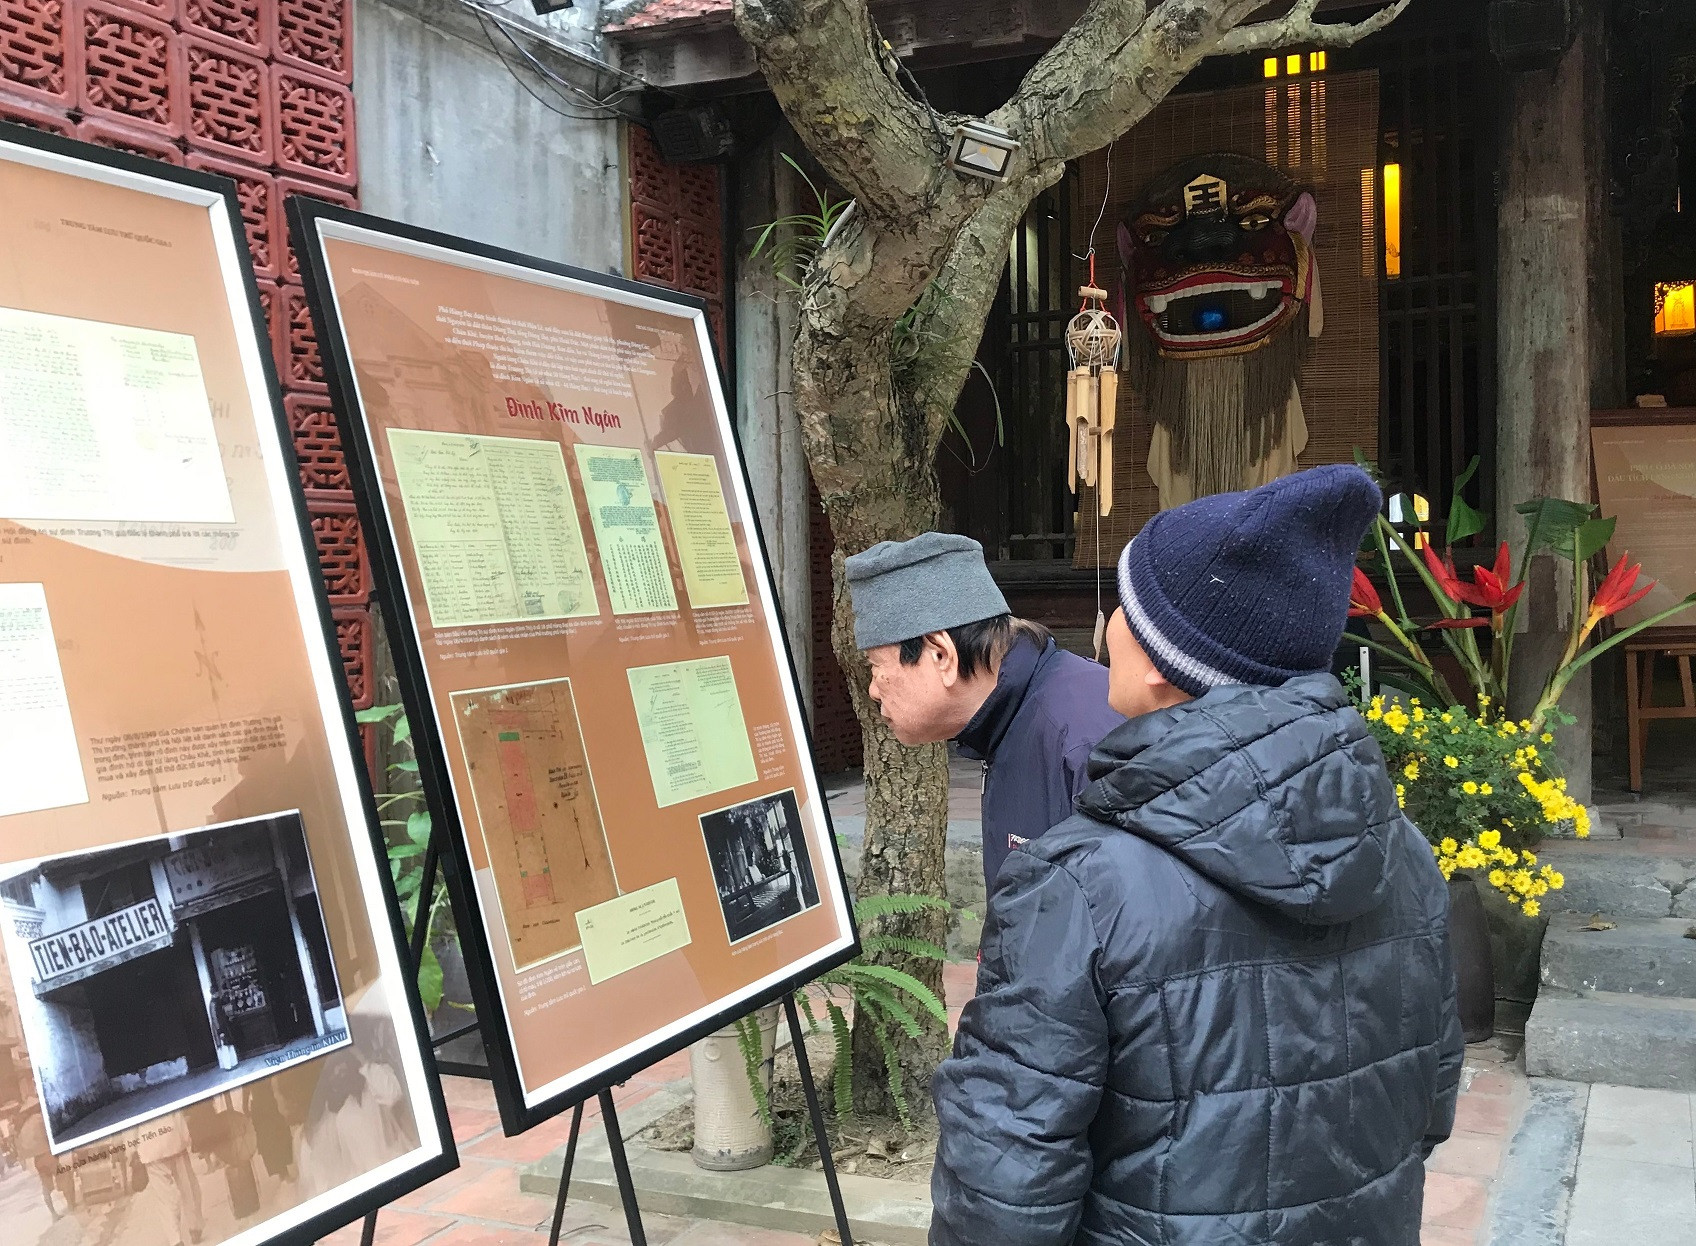 Triển lãm giúp công chúng hiểu hơn về hành trình từ làng nghề ra phố nghề của những người thợ thủ công trong khu phố cổ